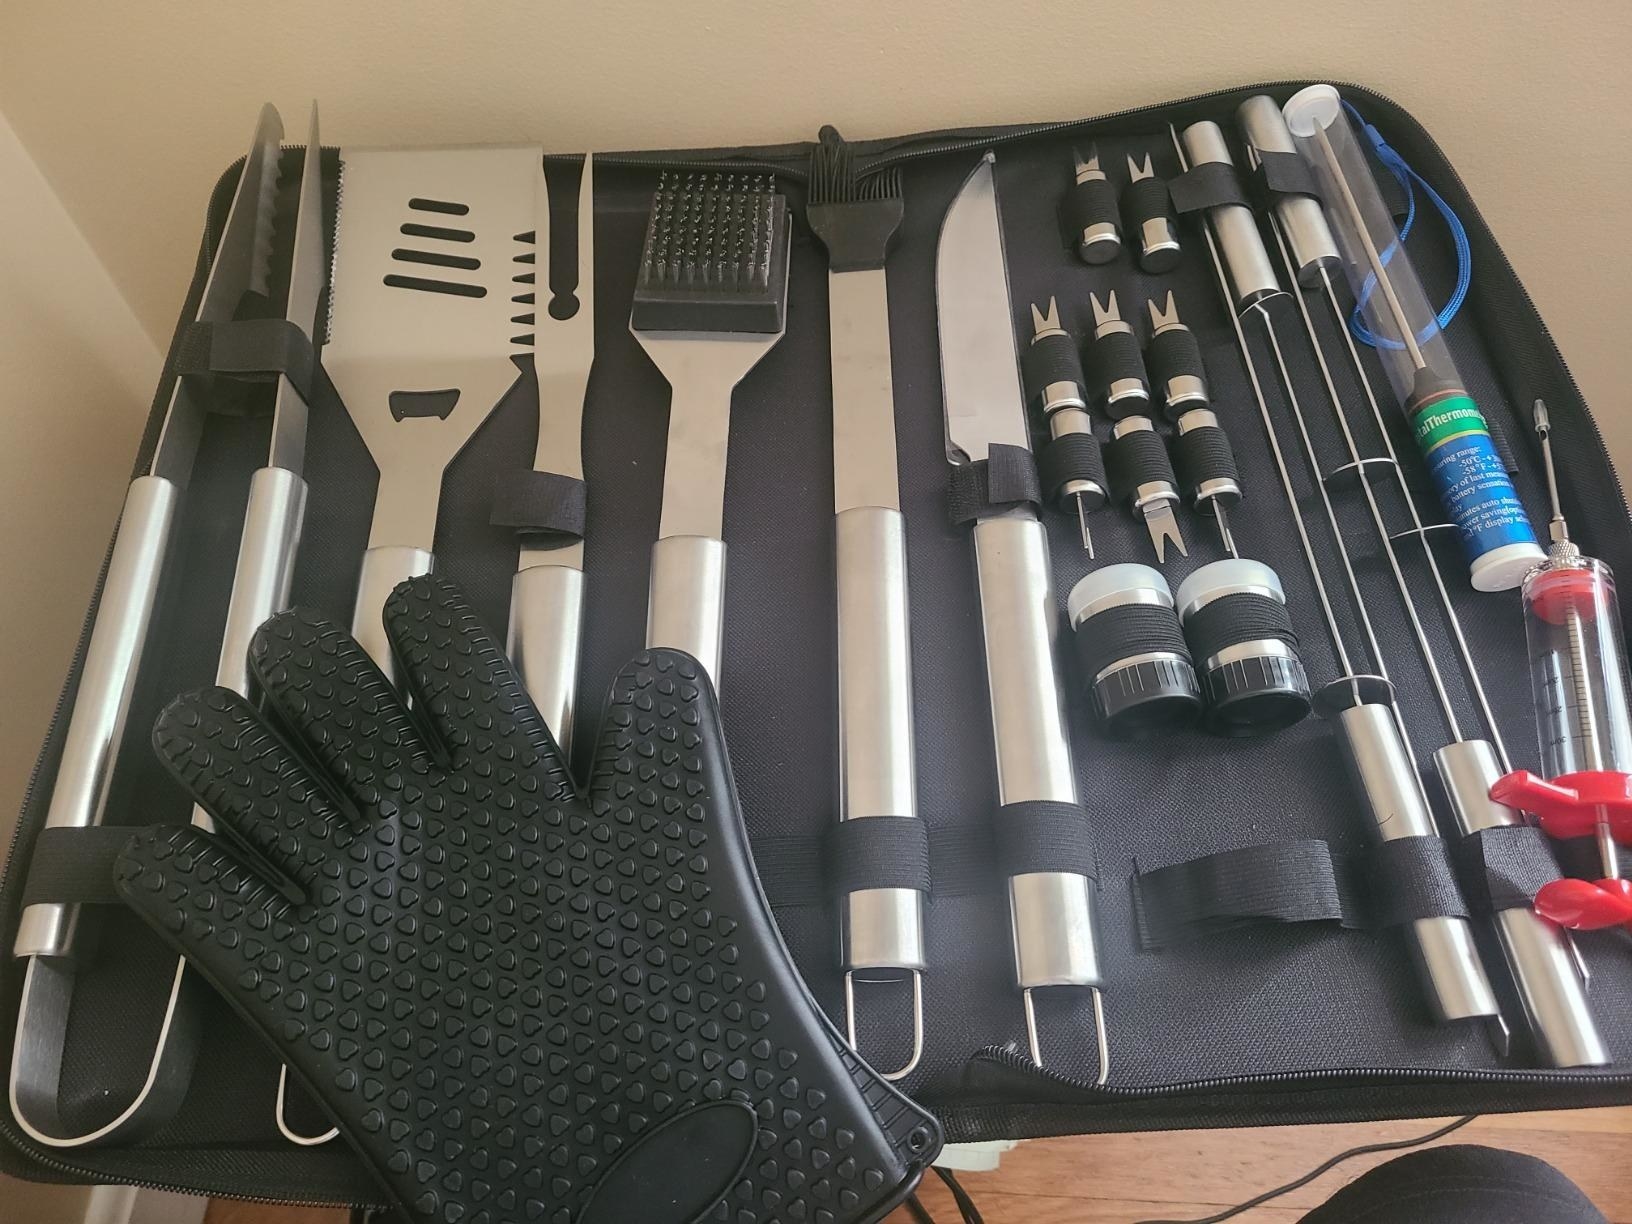 the full set of utensils